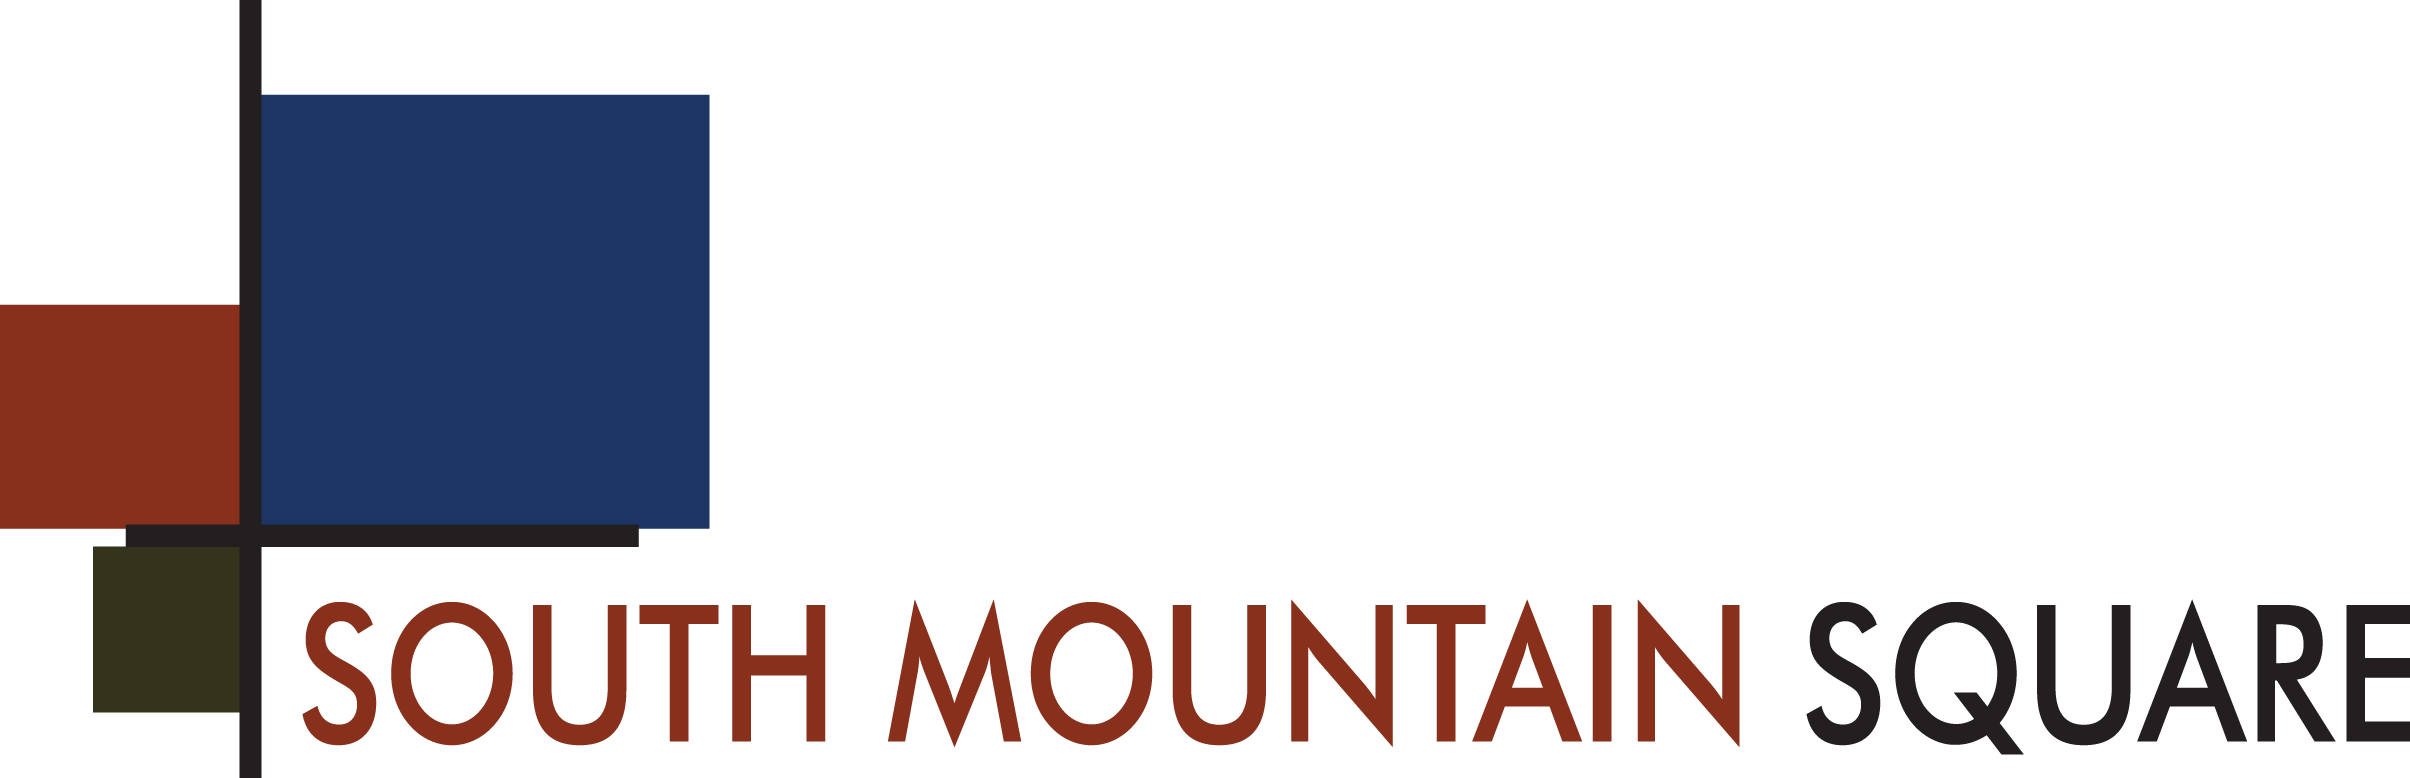 South Mountain Logo - South Mountain Square Arizona Apartments